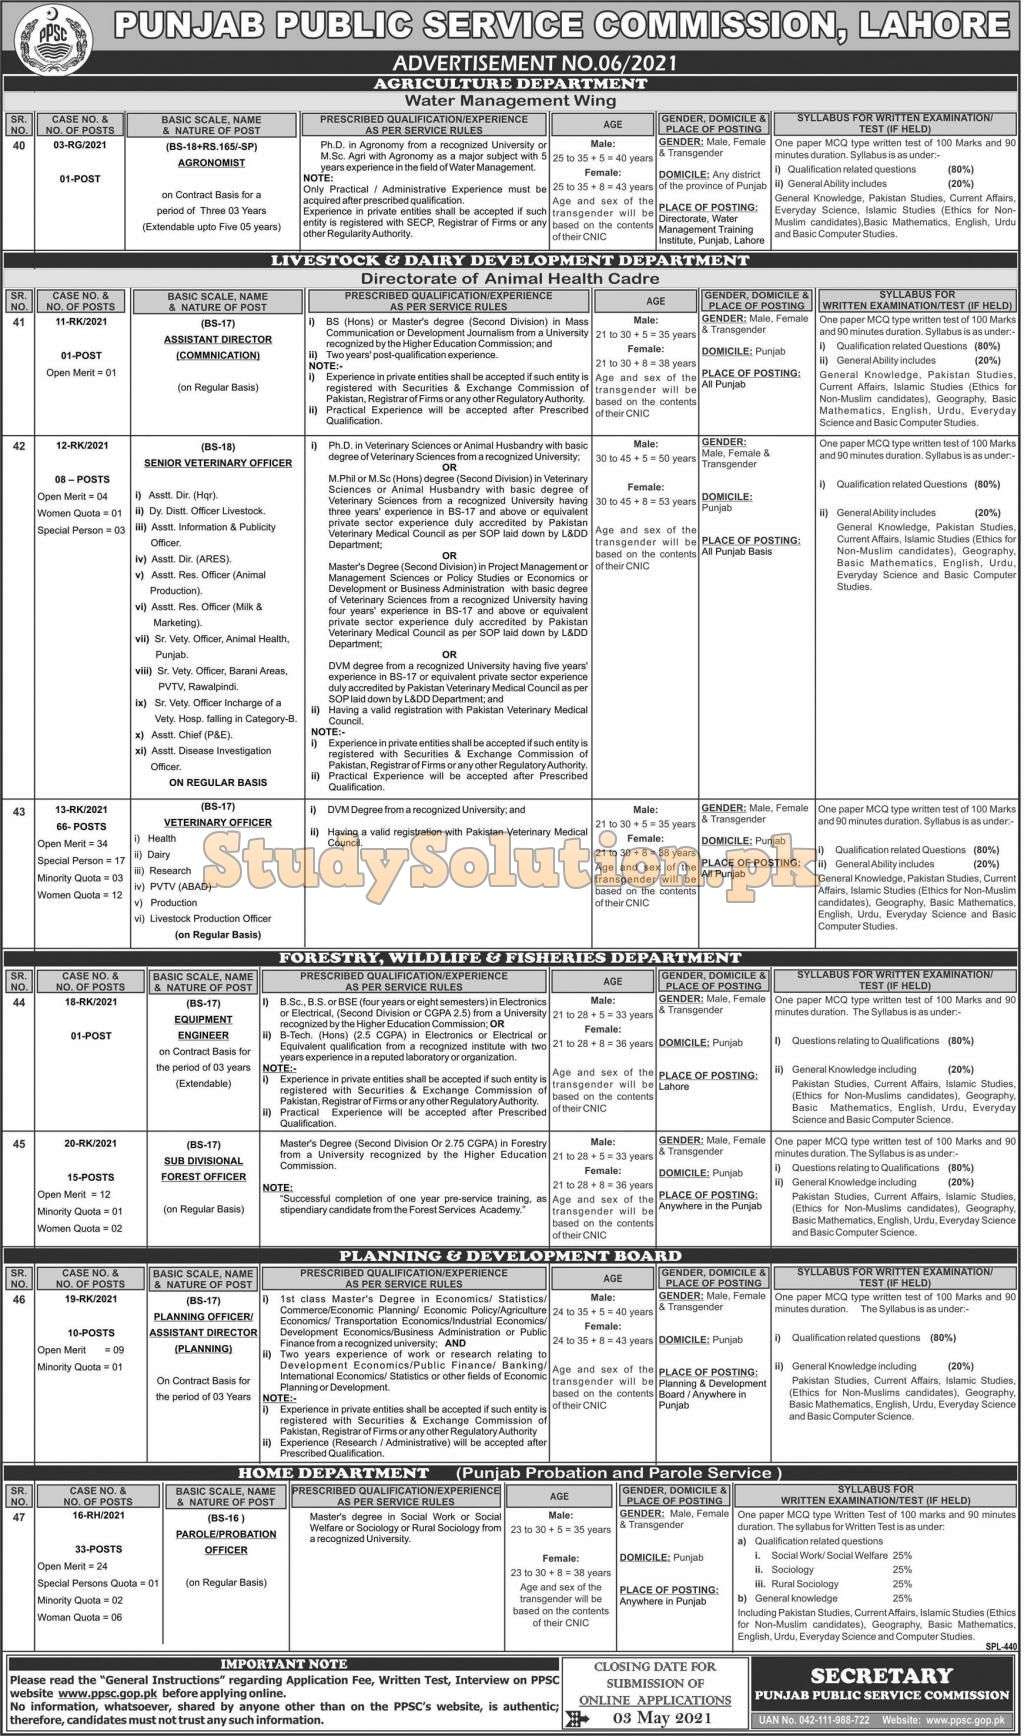 PPSC Punjab Public Service Commission Latest Jobs 2021 Advertisement No 08/2021